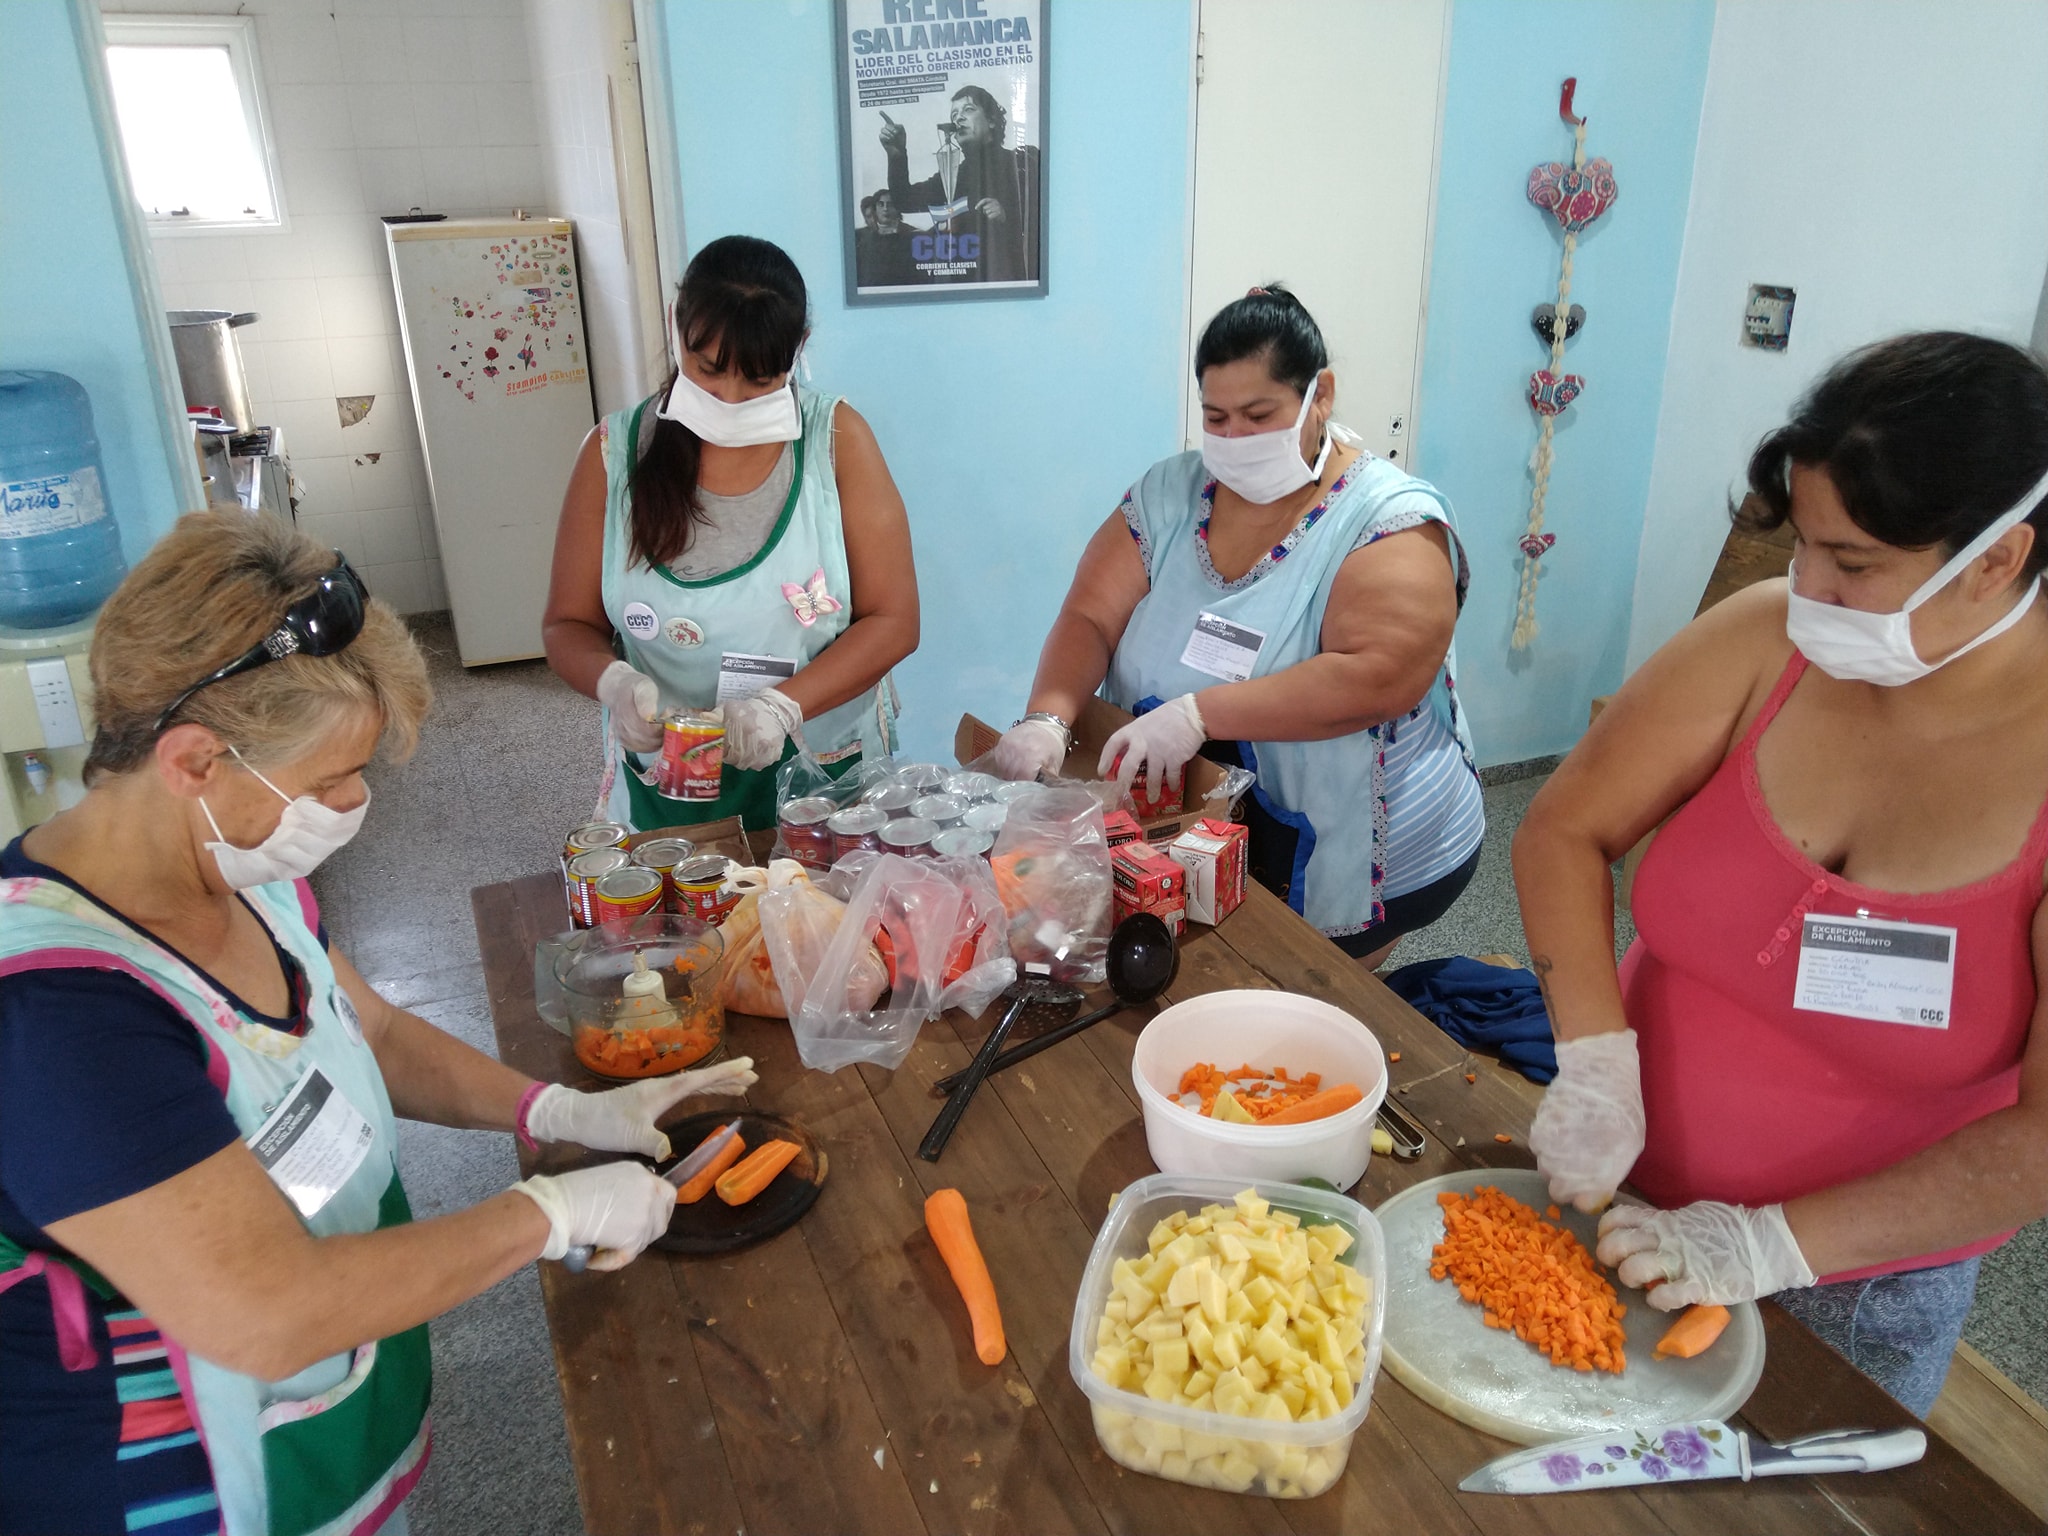 El comedor y merendero “Gody Álvarez” de Santa Rosa continúa elaborando viandas para repartir entre las familias que más lo necesitan